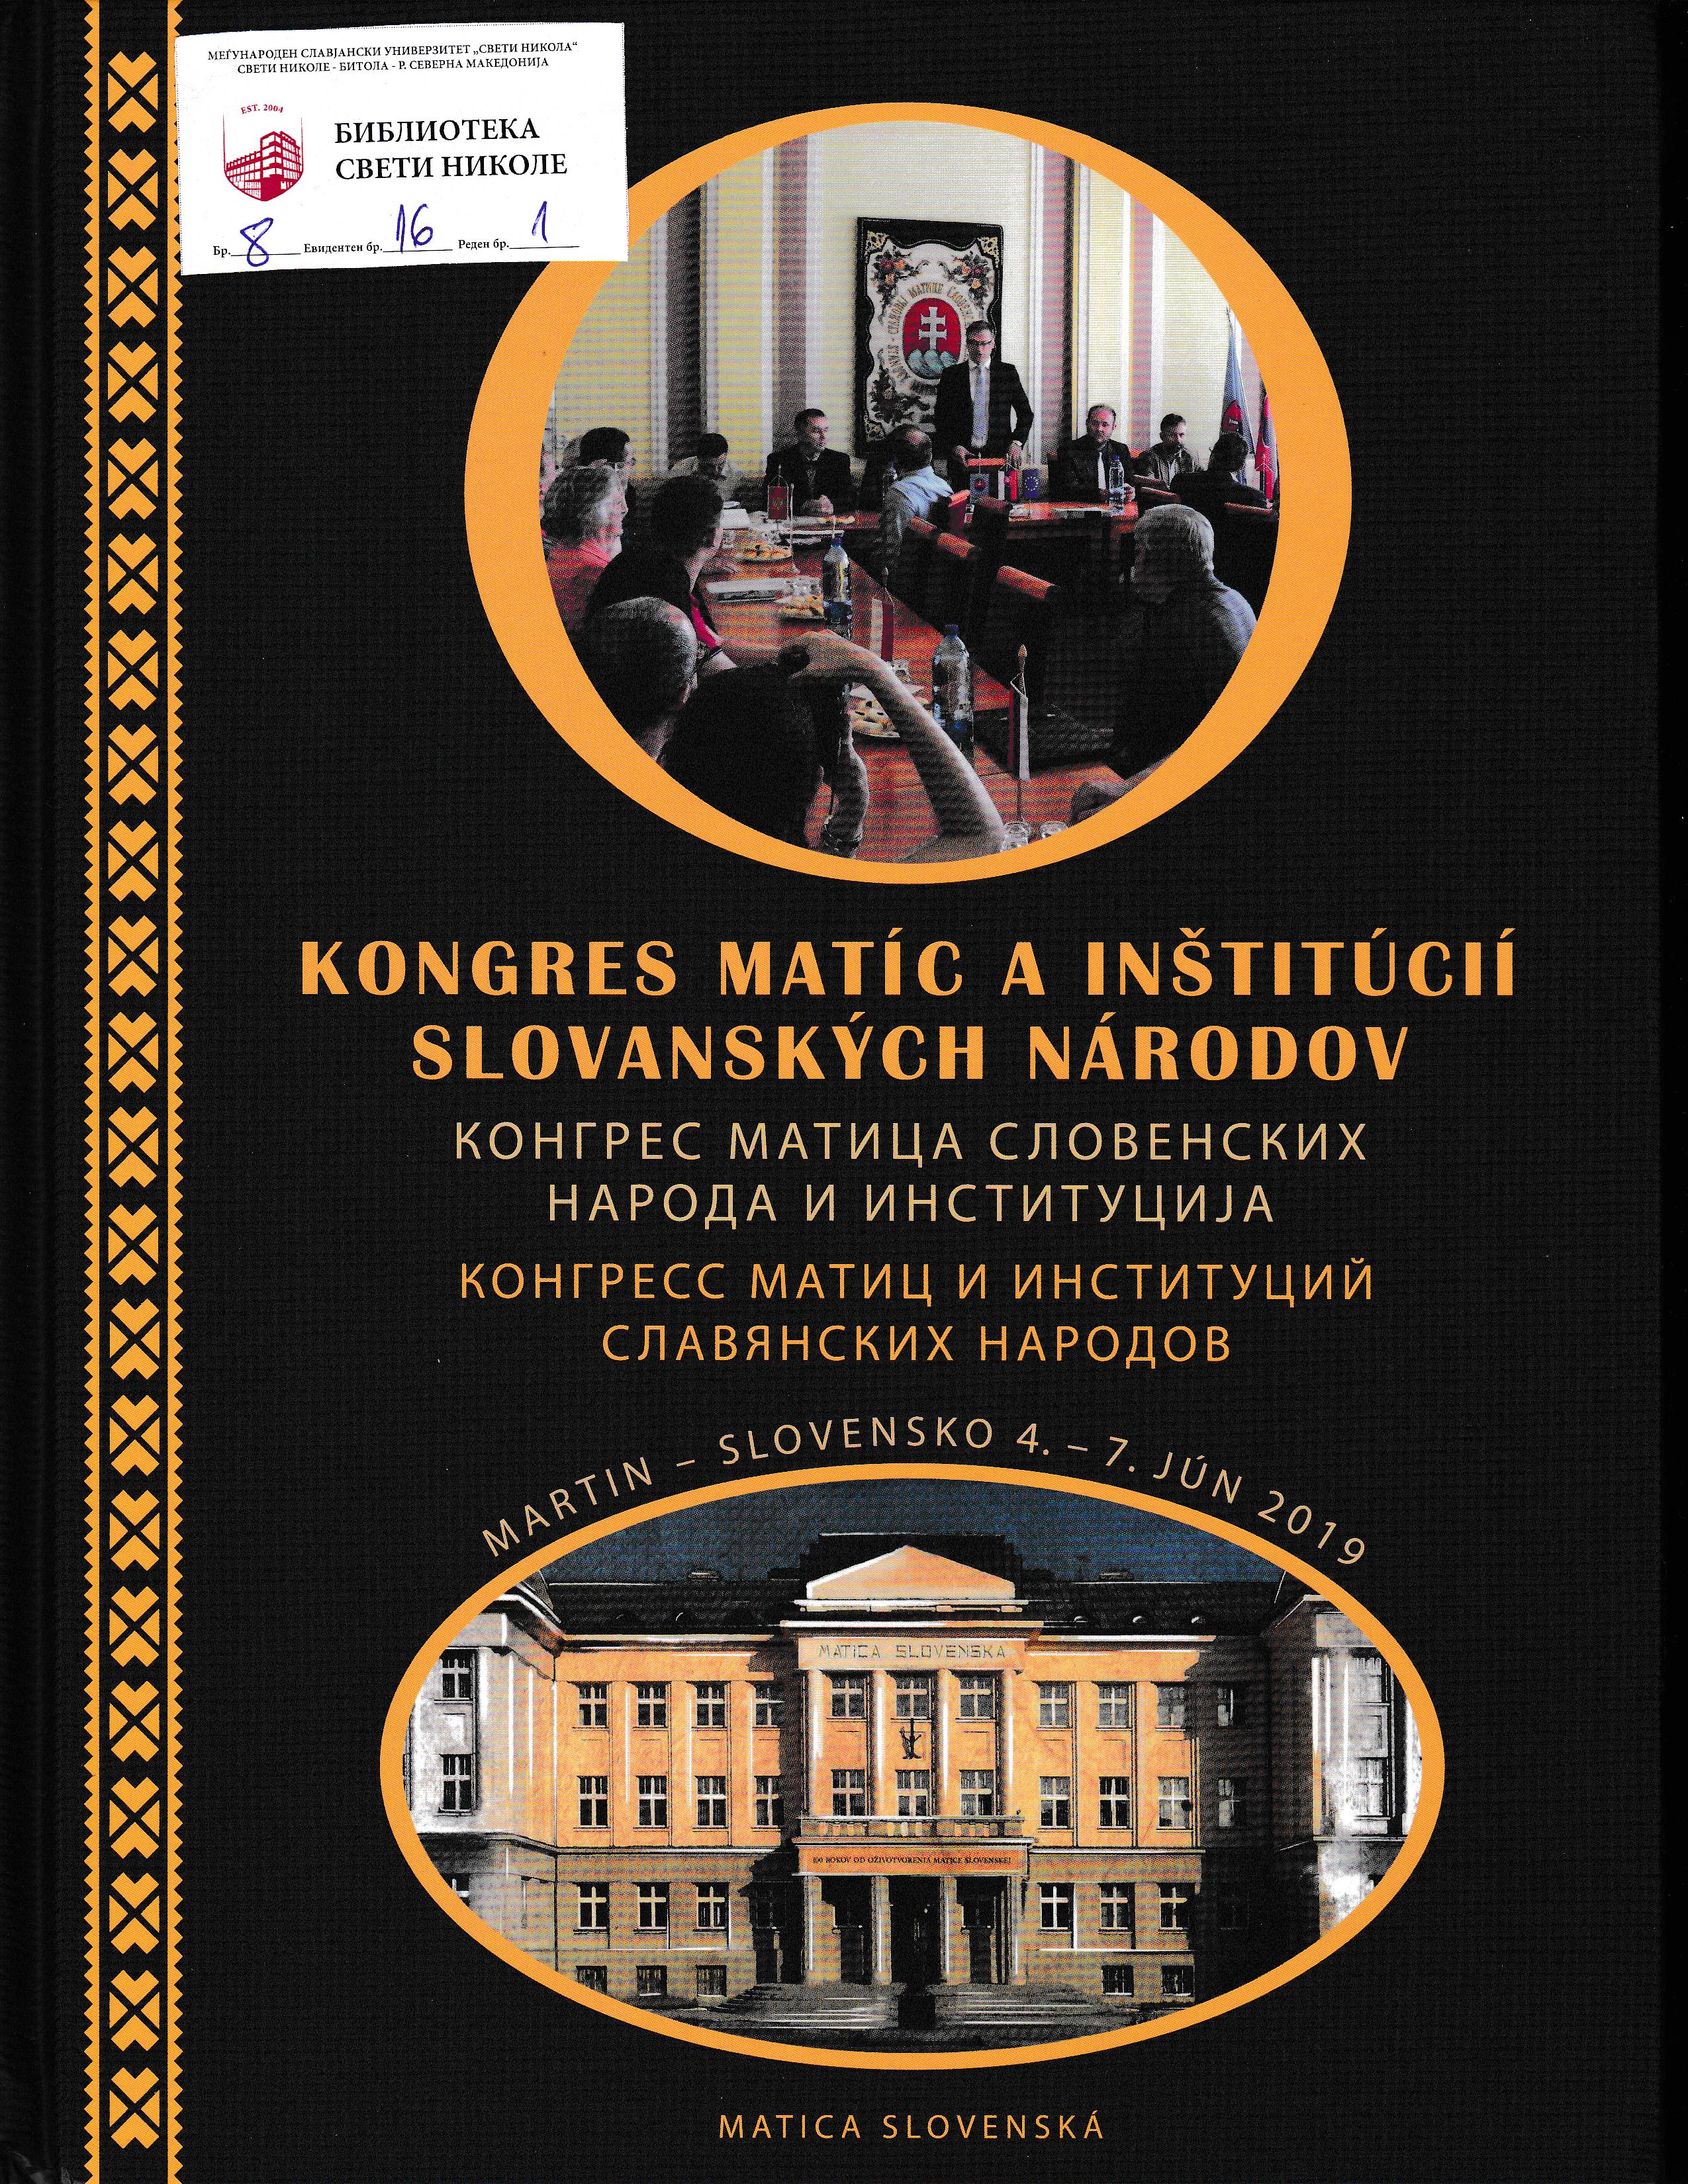 Kongres Matic a inštitucii slovanskych narodov